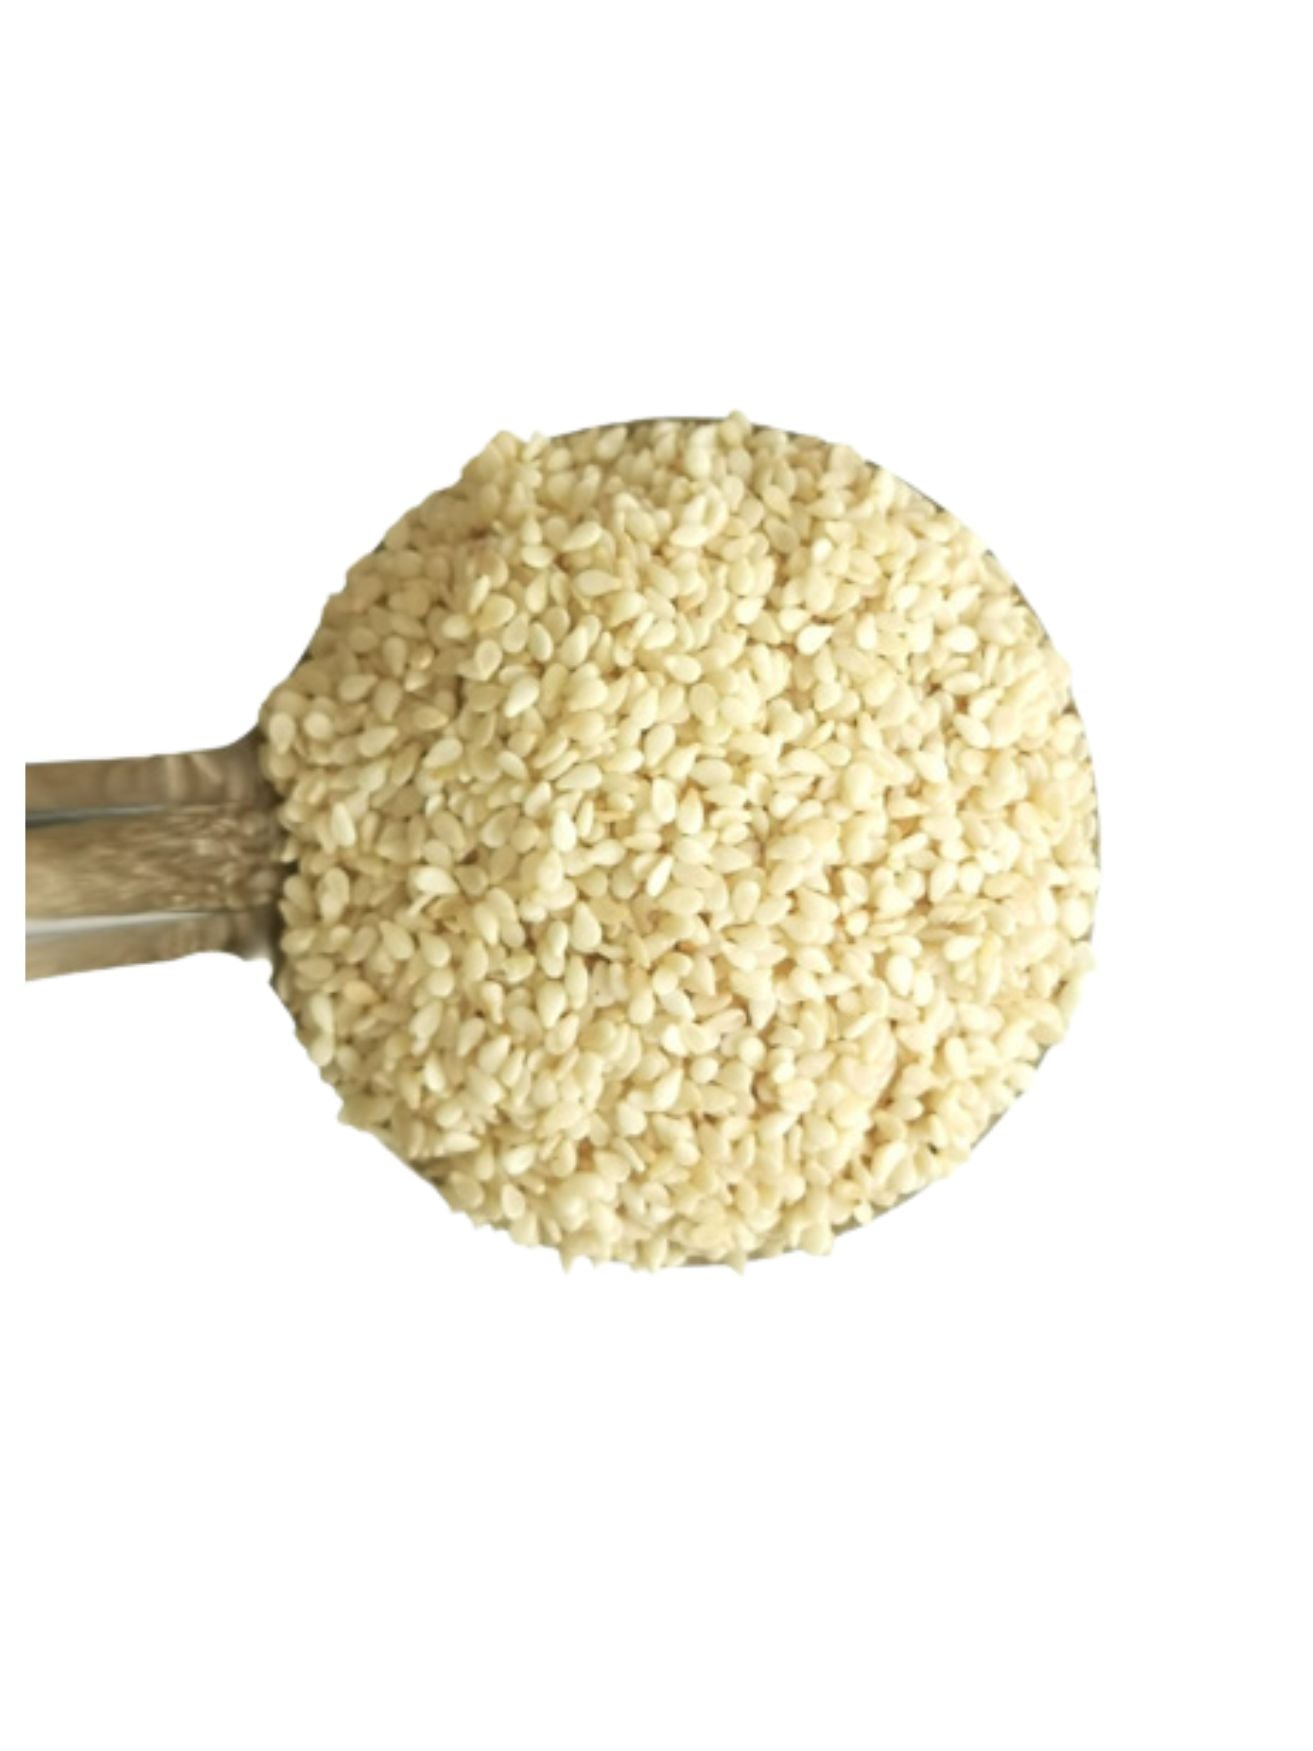 Sesame Seeds - white